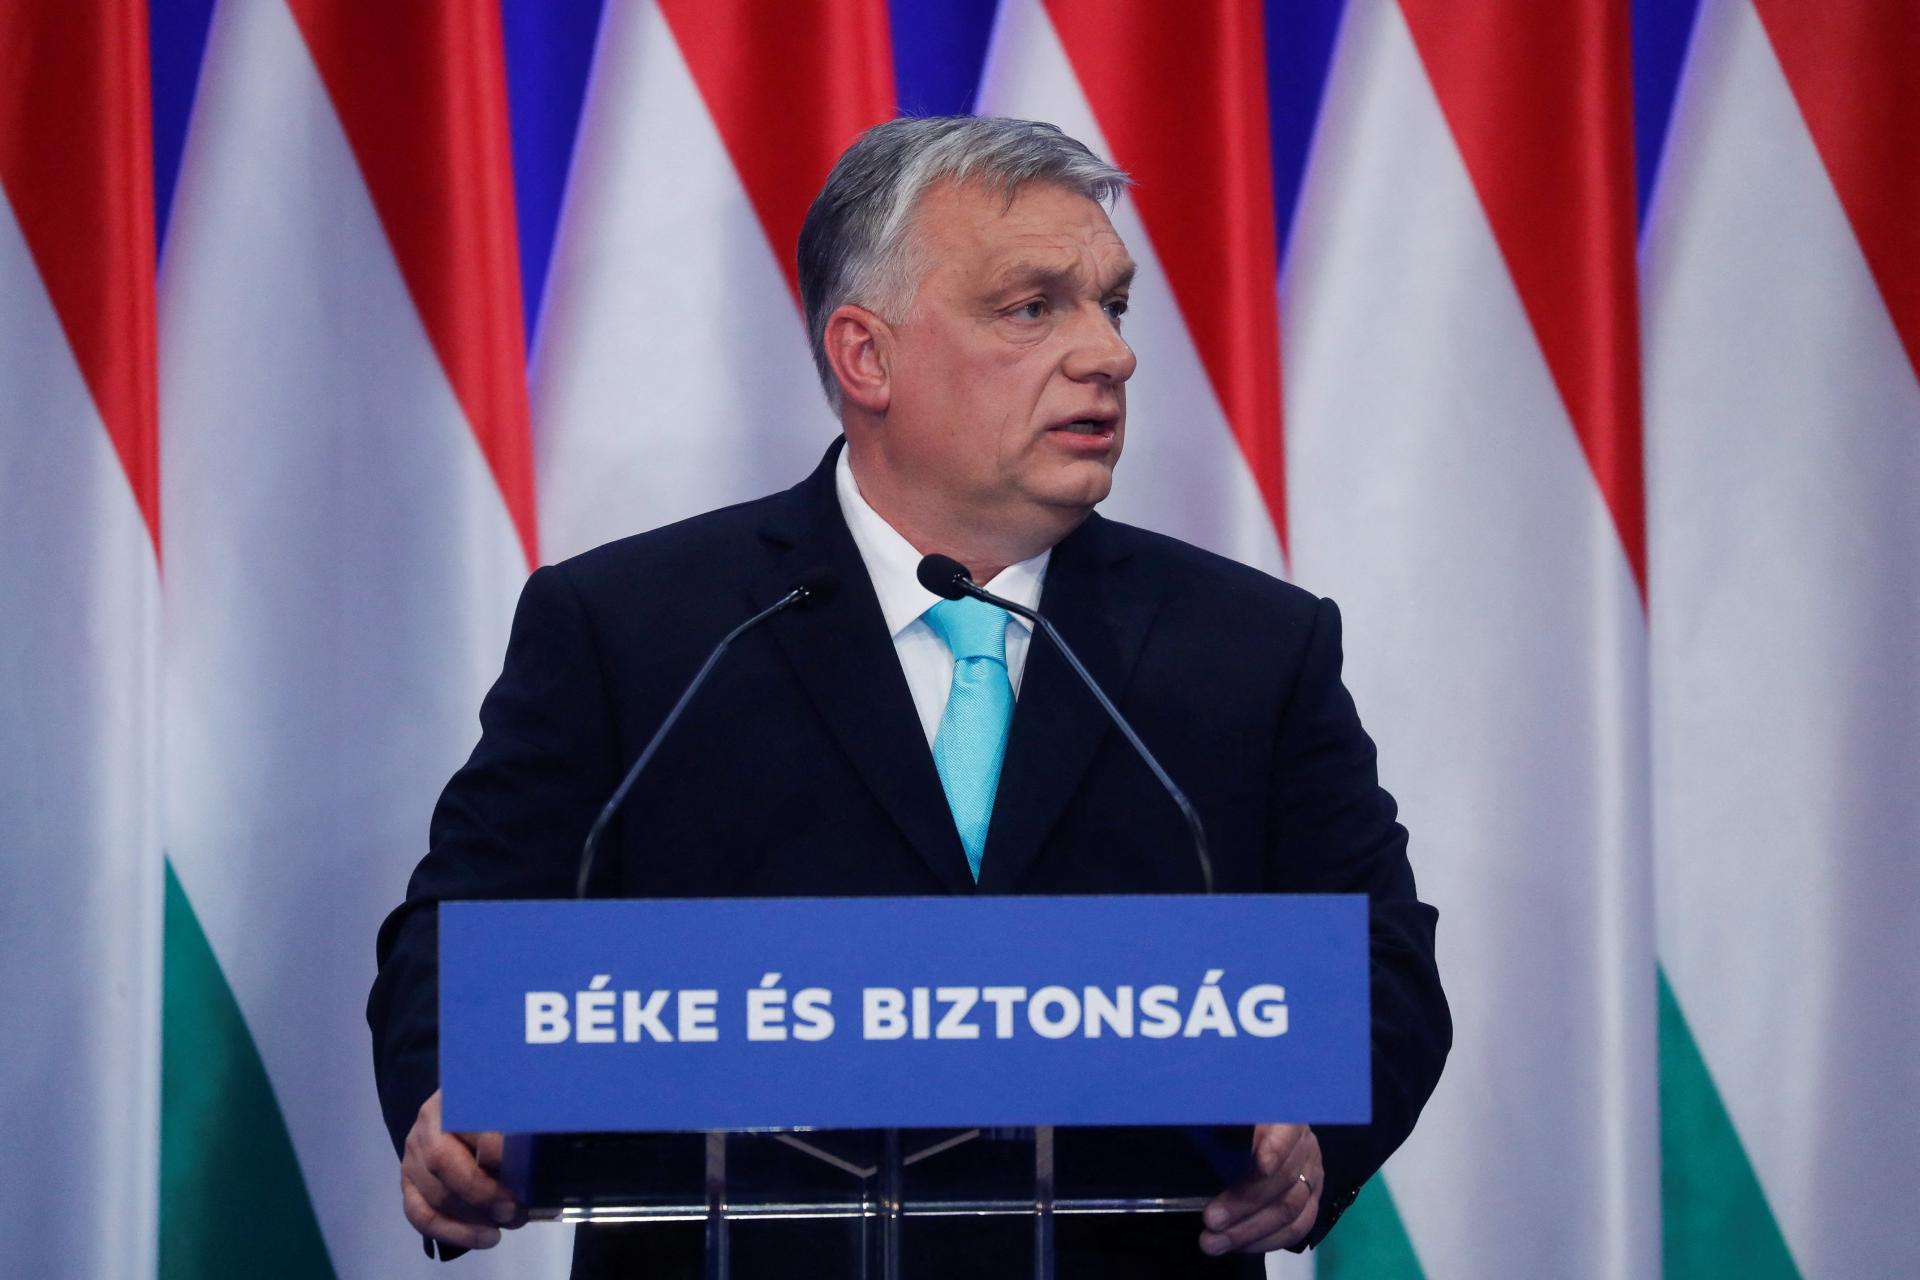 Ruská armáda nie je v stave, aby mohla napadnúť NATO, povedal Orbán. Vzťahy s Moskvou nepreruší